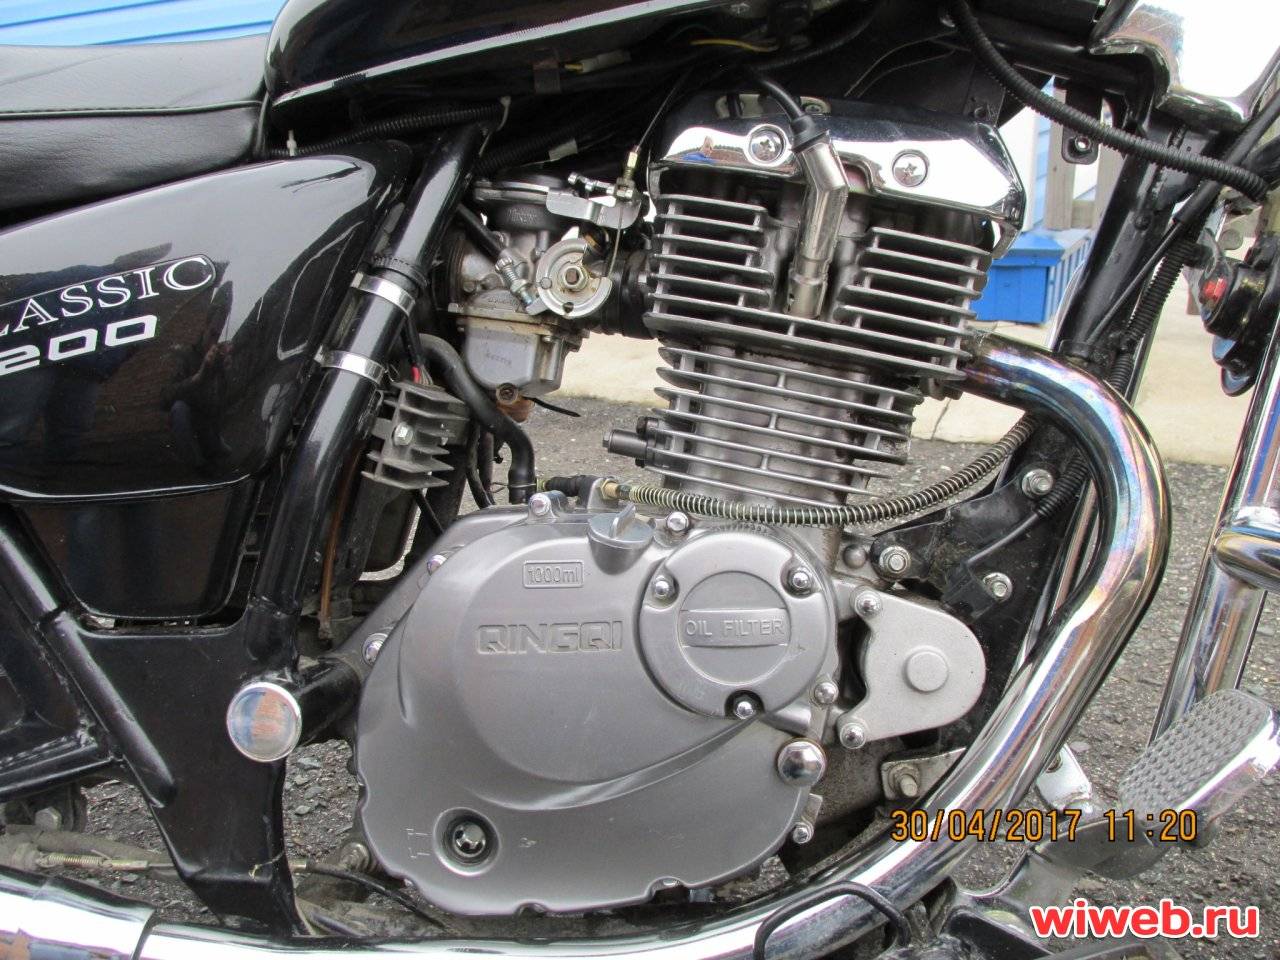 Baltmotors classic 200: достоинства и недостатки, отзывы, технические характеристики